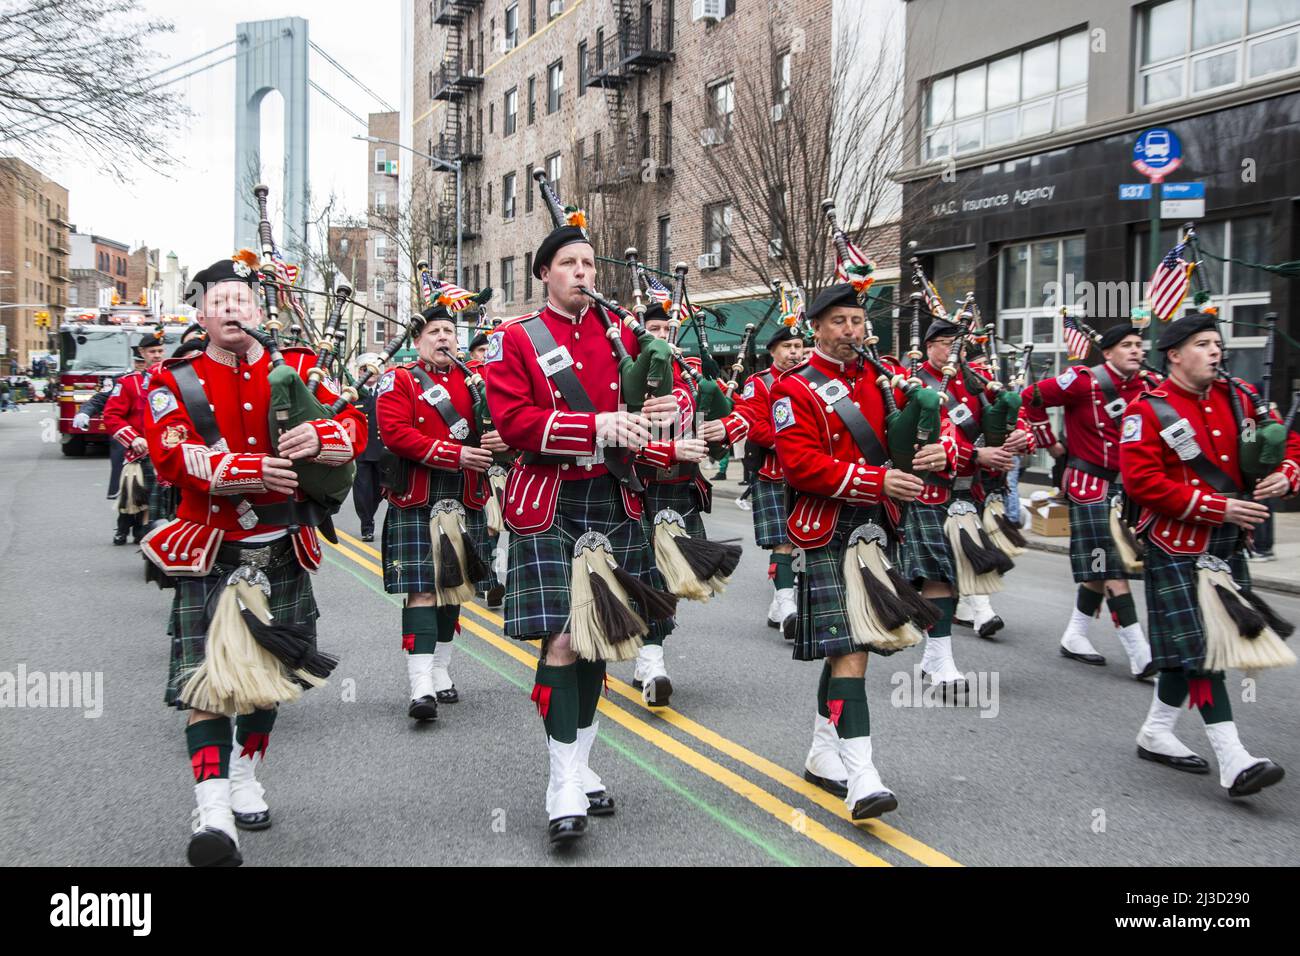 New York Fire Department Emerald Society Pipe Band marche dans Bay Ridge, Brooklyn Saint Patrick's Day Parade à Brooklyn, NY. La tour du pont Verrazano se distingue en arrière-plan. Banque D'Images